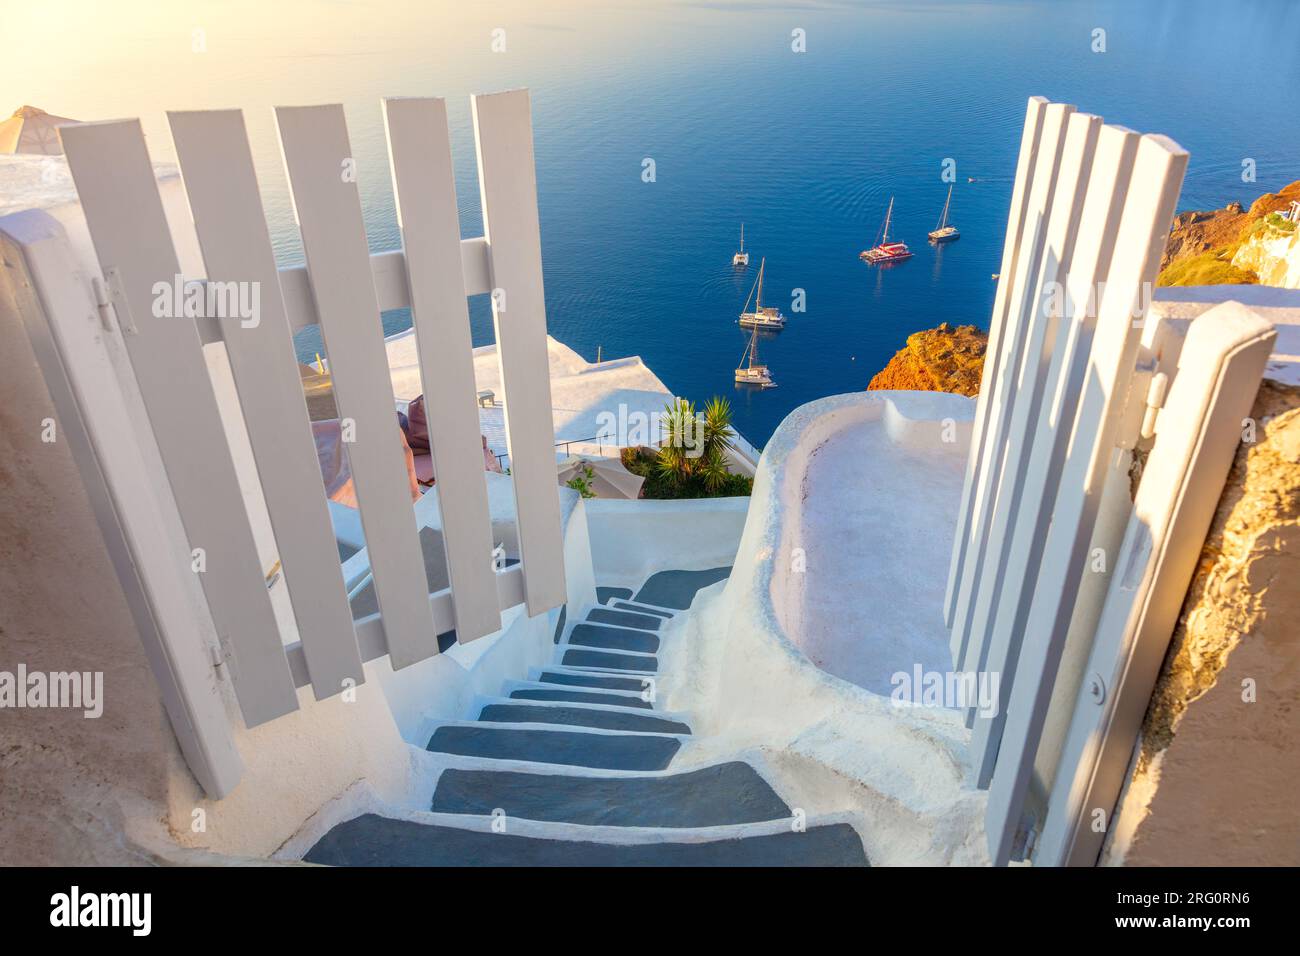 Incredibile porta in paradiso. Santorini, Grecia. Architettura bianca, porte aperte e gradini per il mare blu di Santorini. Vacanze in Grecia, Santorini. Foto Stock